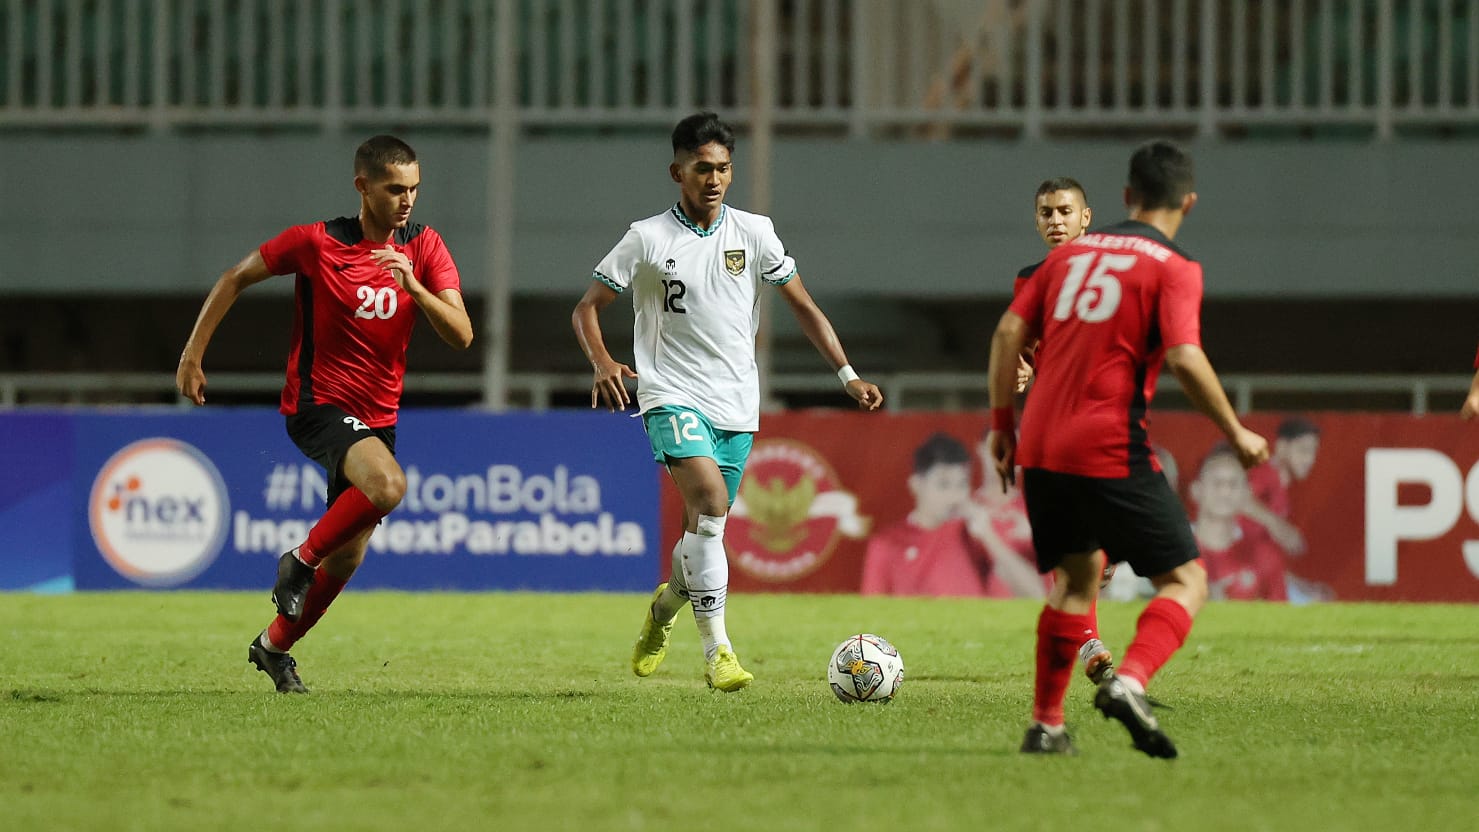 Kesan Pelatih Palestina Selama Jalani Laga Kualifikasi Piala Asia U-17 2023 di Indonesia 